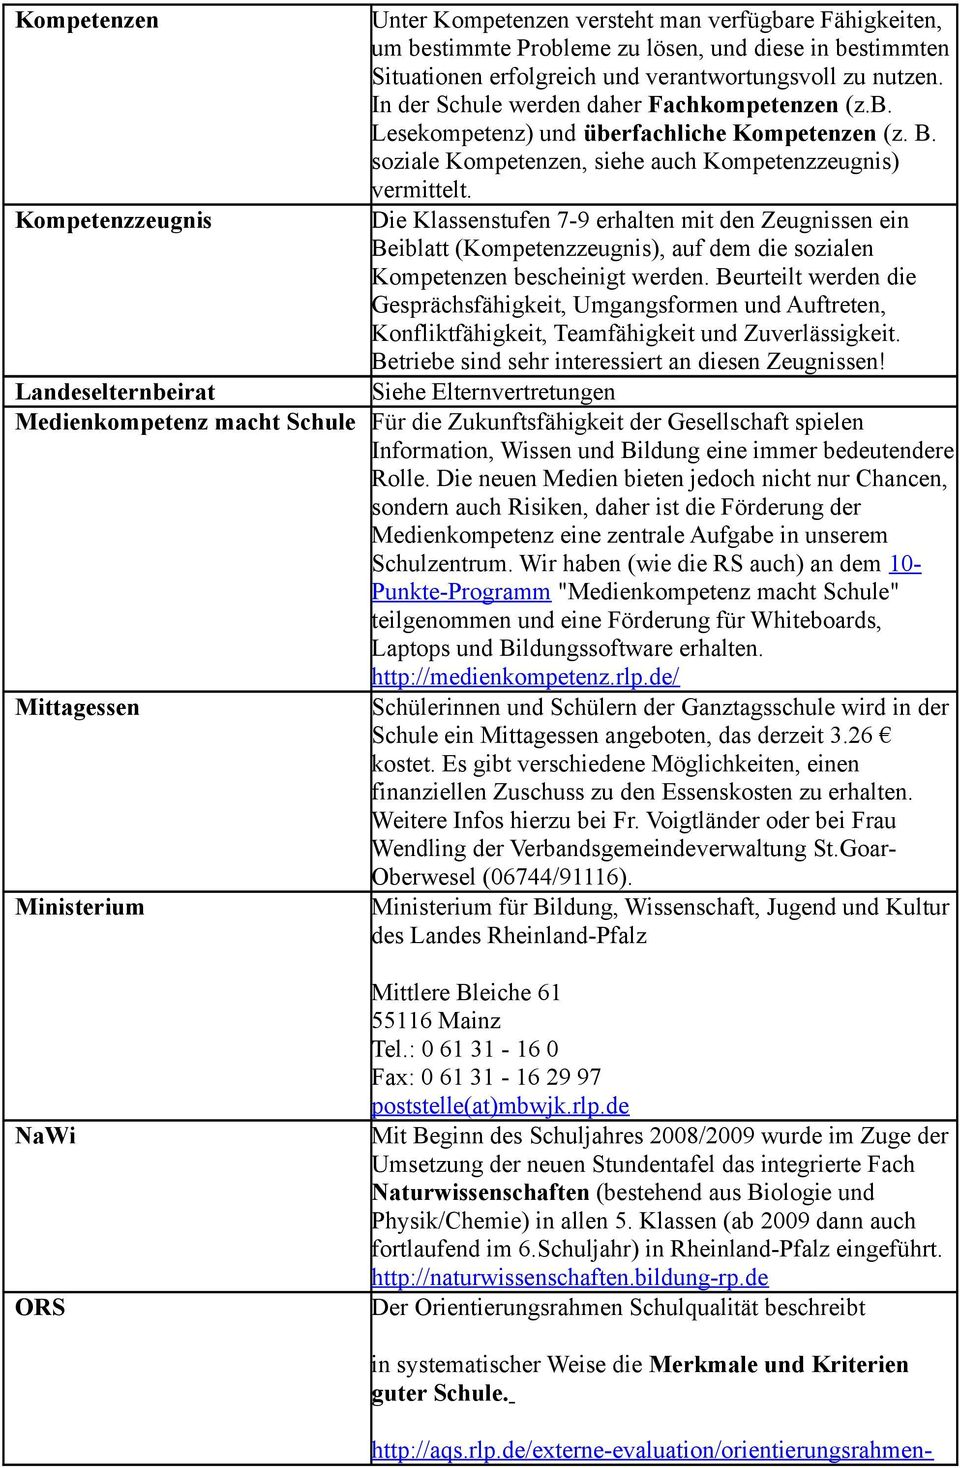 Klassen (ab 2009 dann auch fortlaufend im 6.Schuljahr) in Rheinland-Pfalz eingeführt. http://naturwissenschaften.bildung-rp.